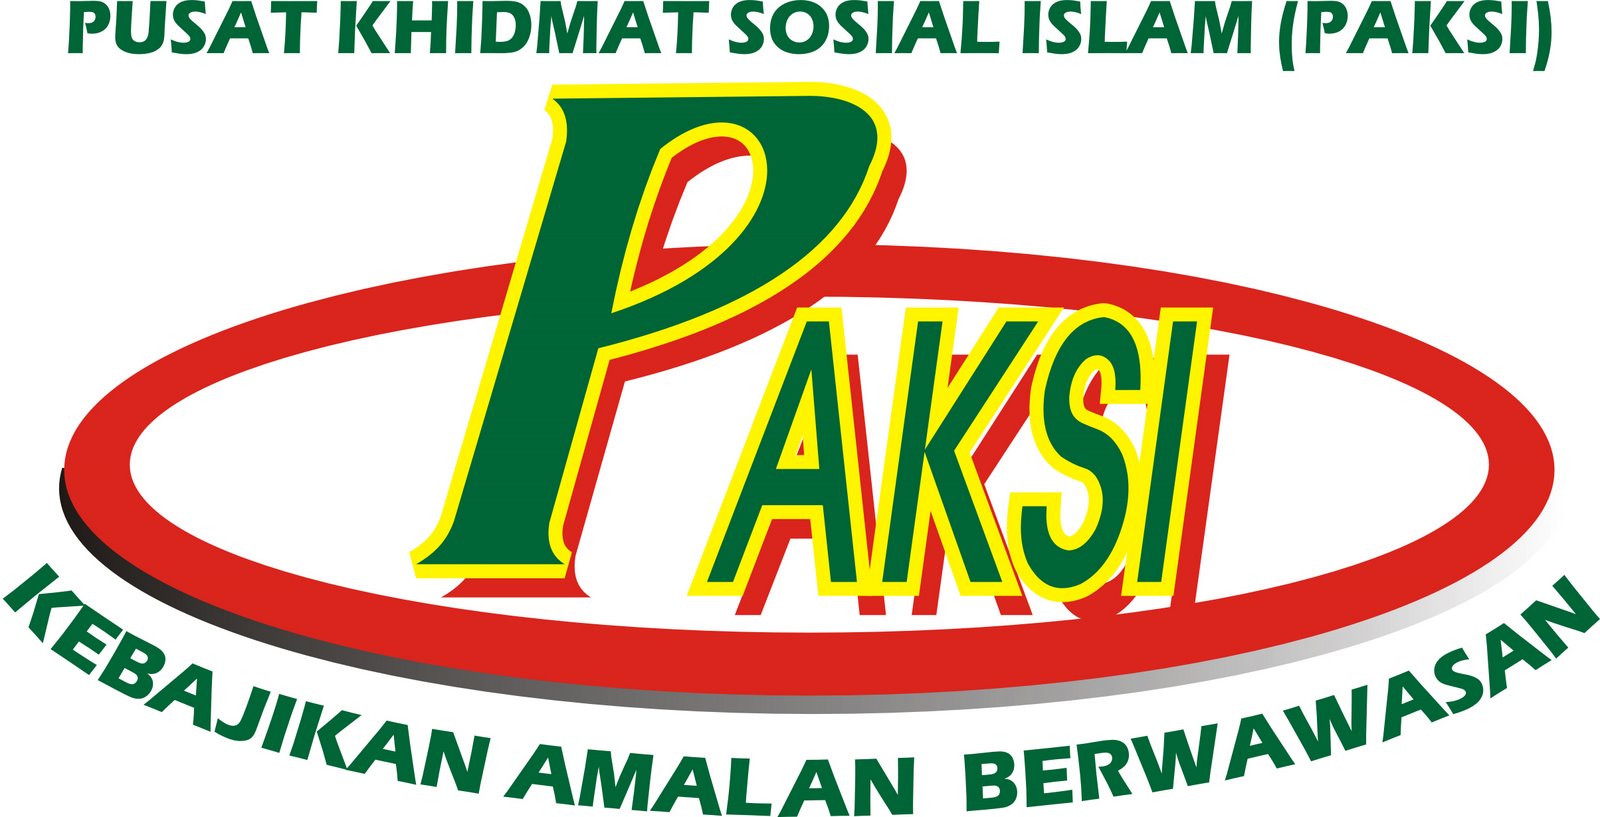 PUSAT KHIDMAT SOSIAL ISLAM (PAKSI)